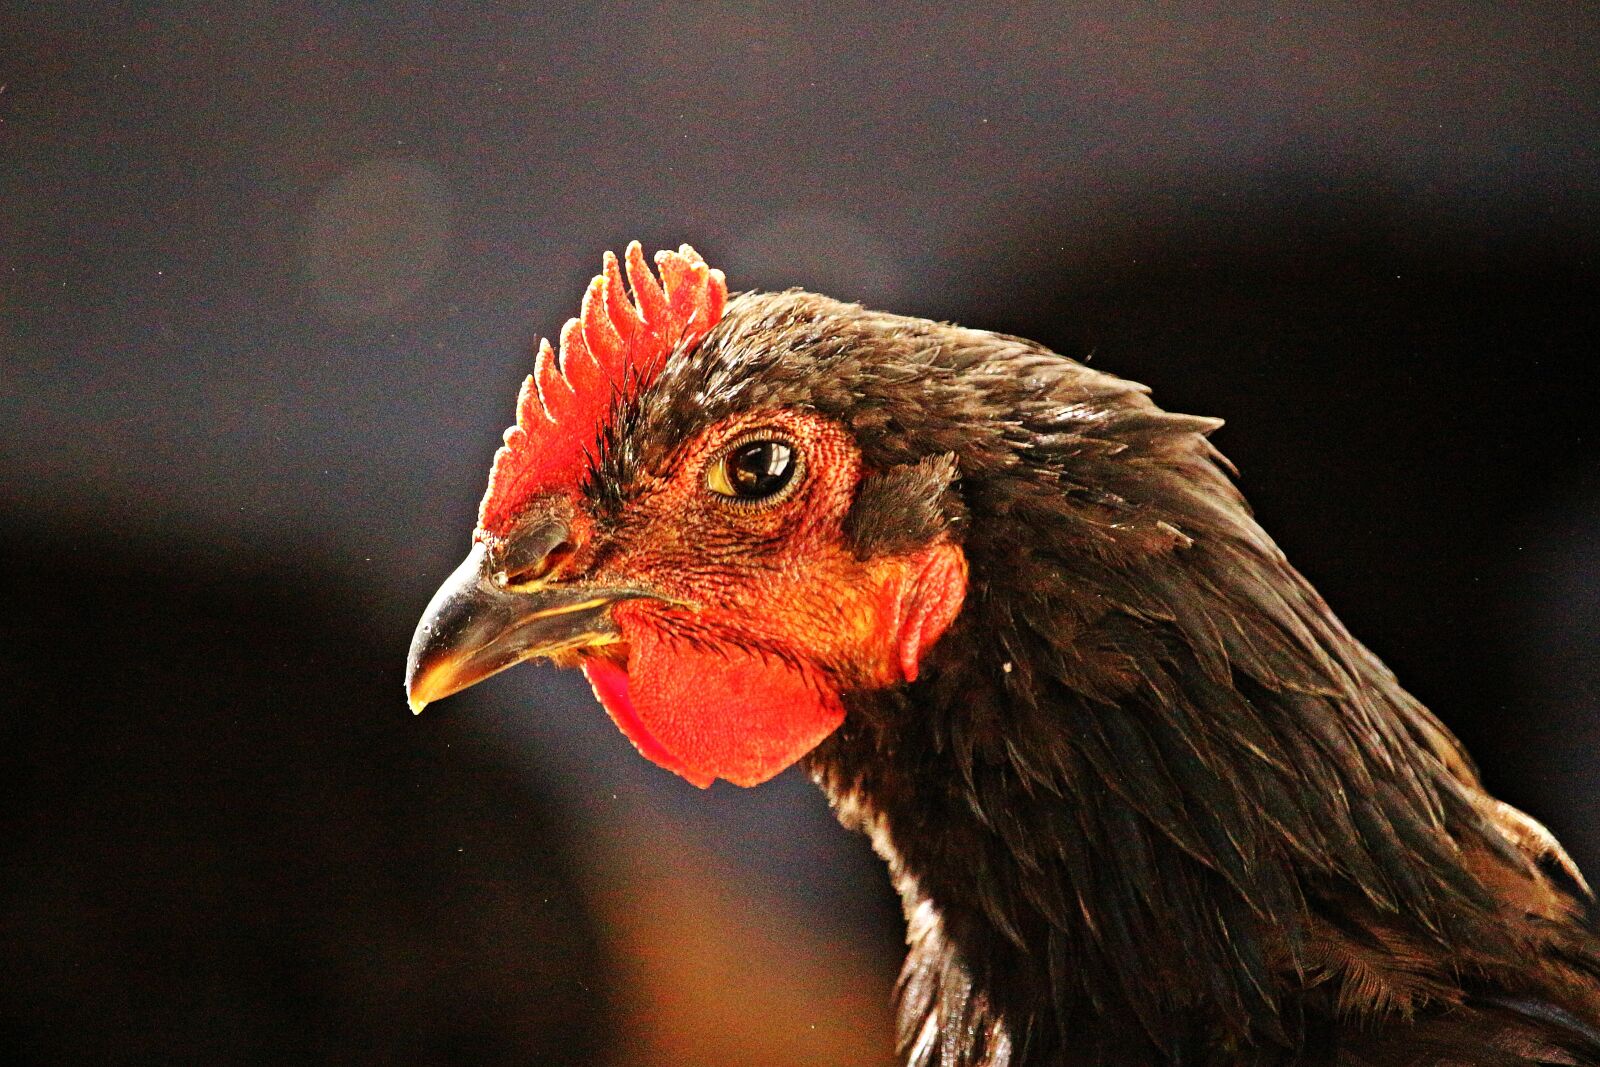 Canon EOS 100D (EOS Rebel SL1 / EOS Kiss X7) sample photo. Bird, chicken, poultry photography